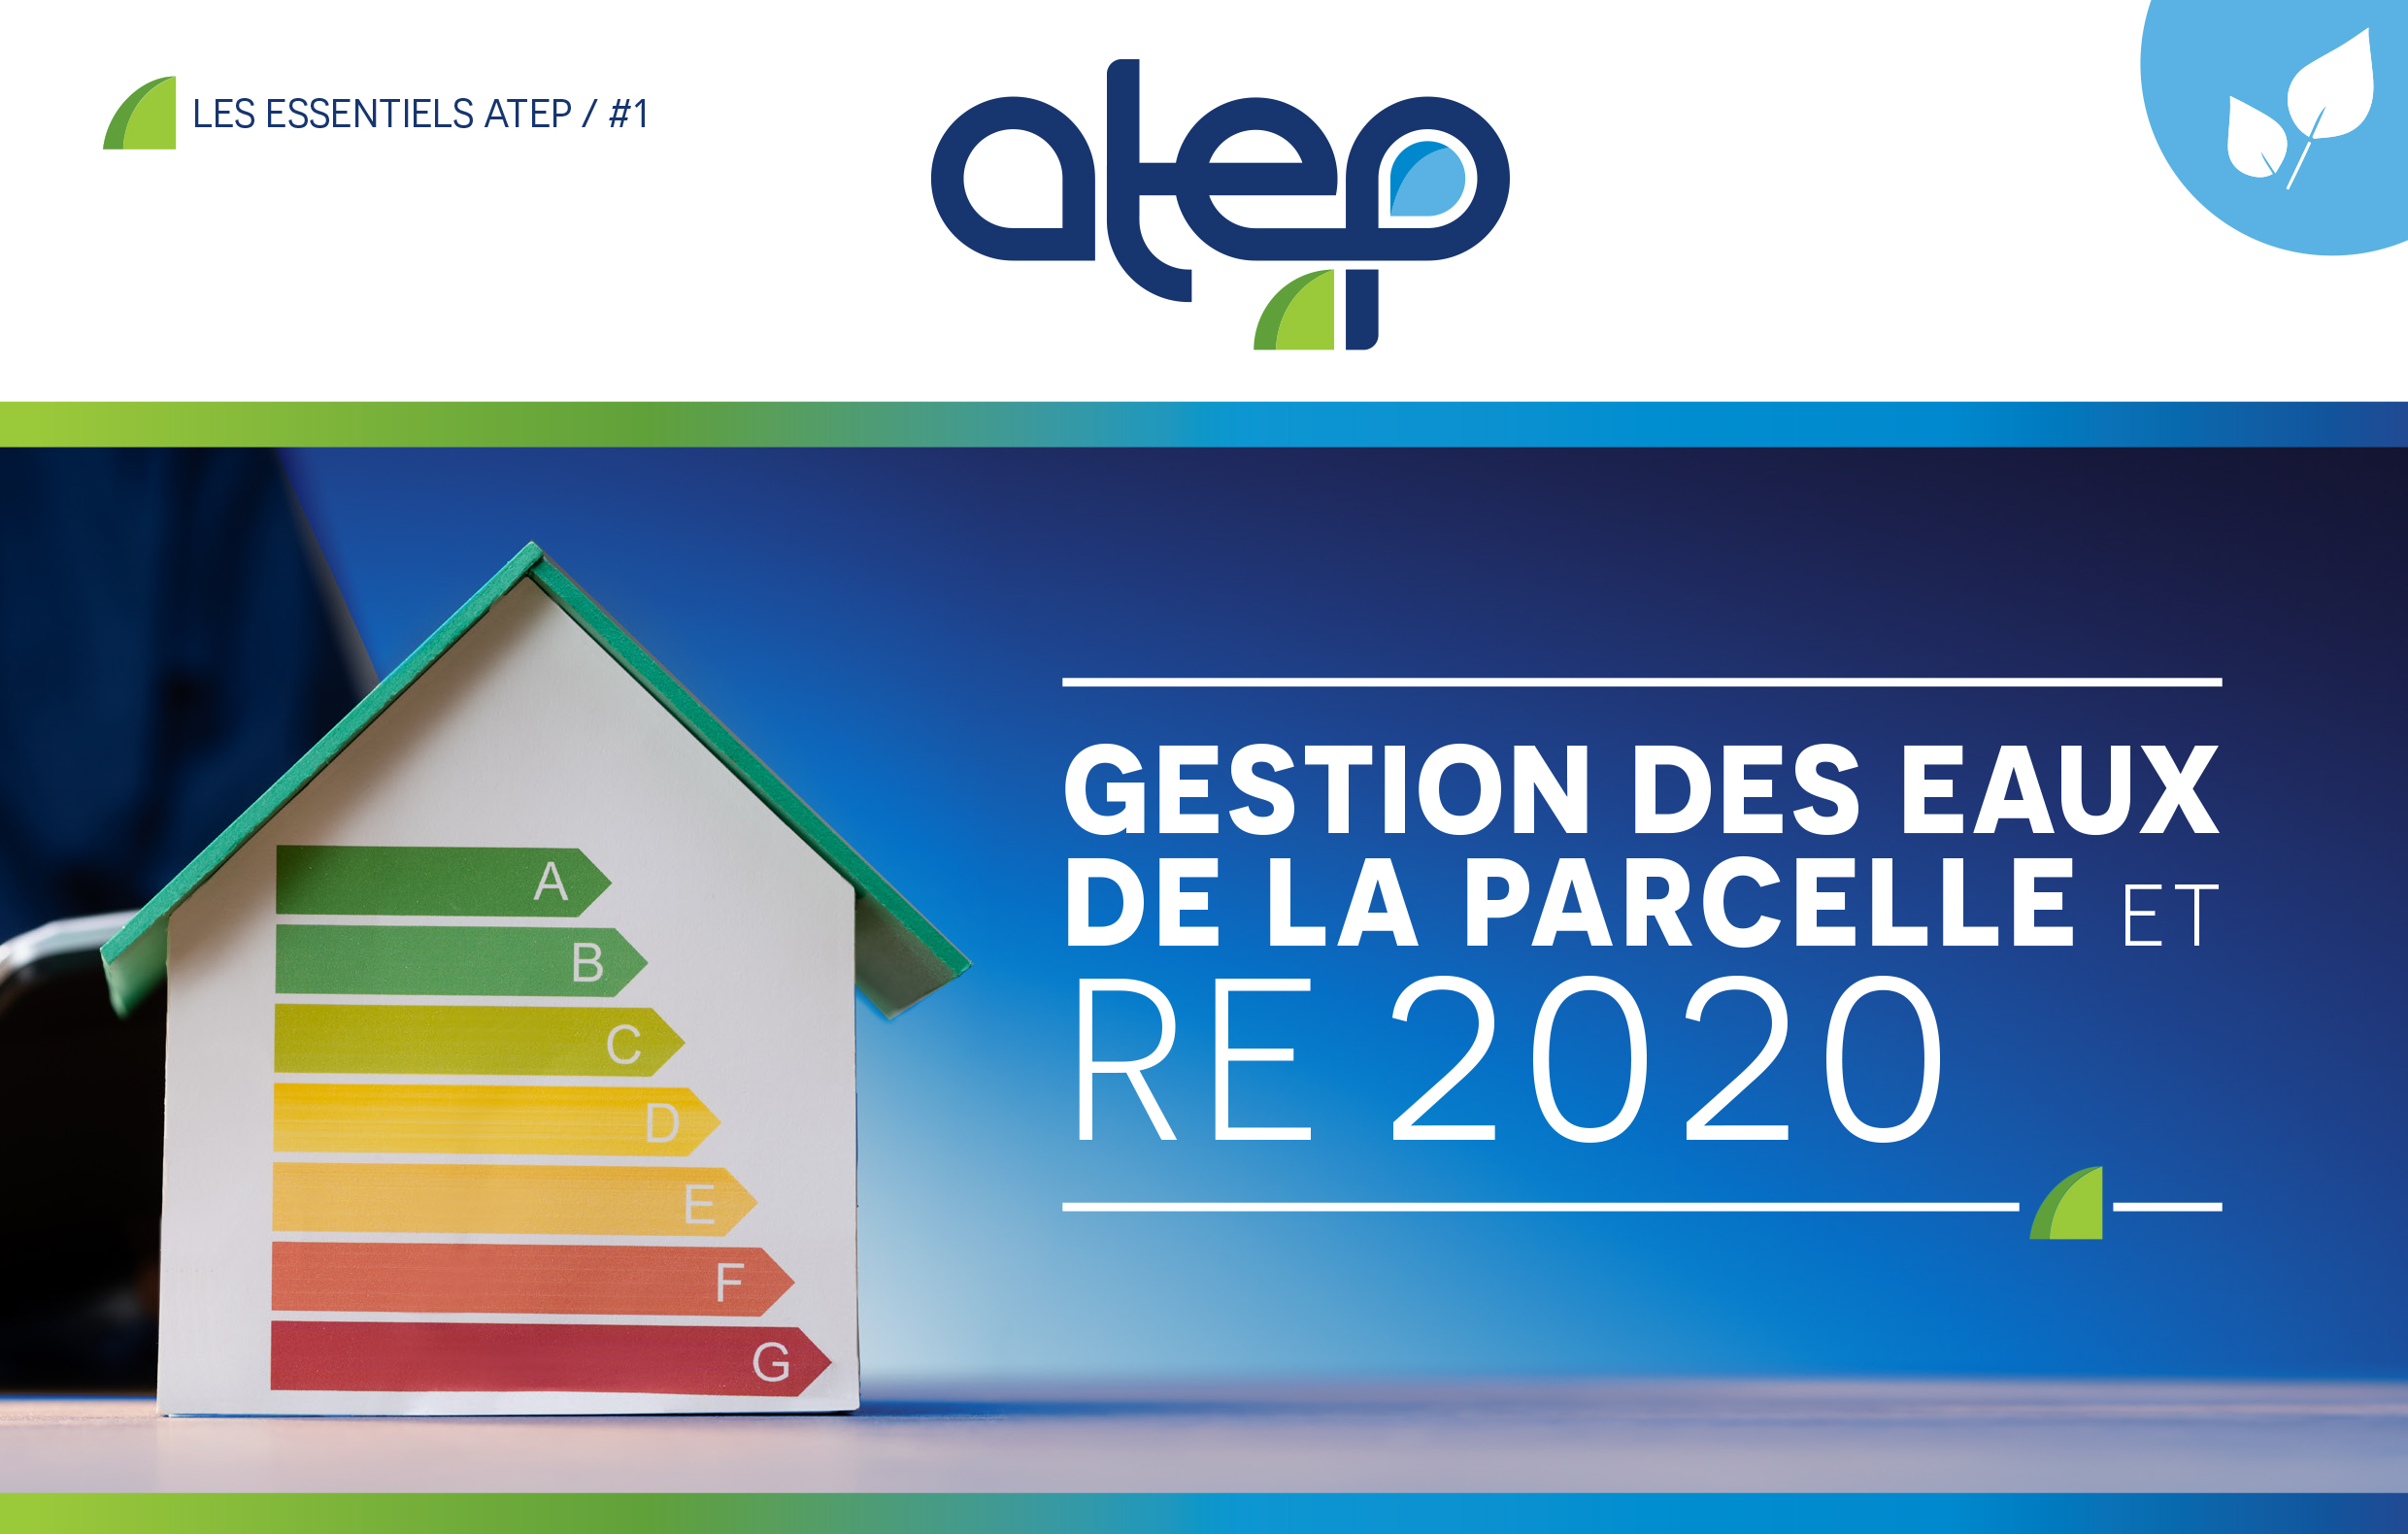 LES ESSENTIELS ATEP / #1 GESTION DES EAUX DE LA PARCELLE et RE 2020